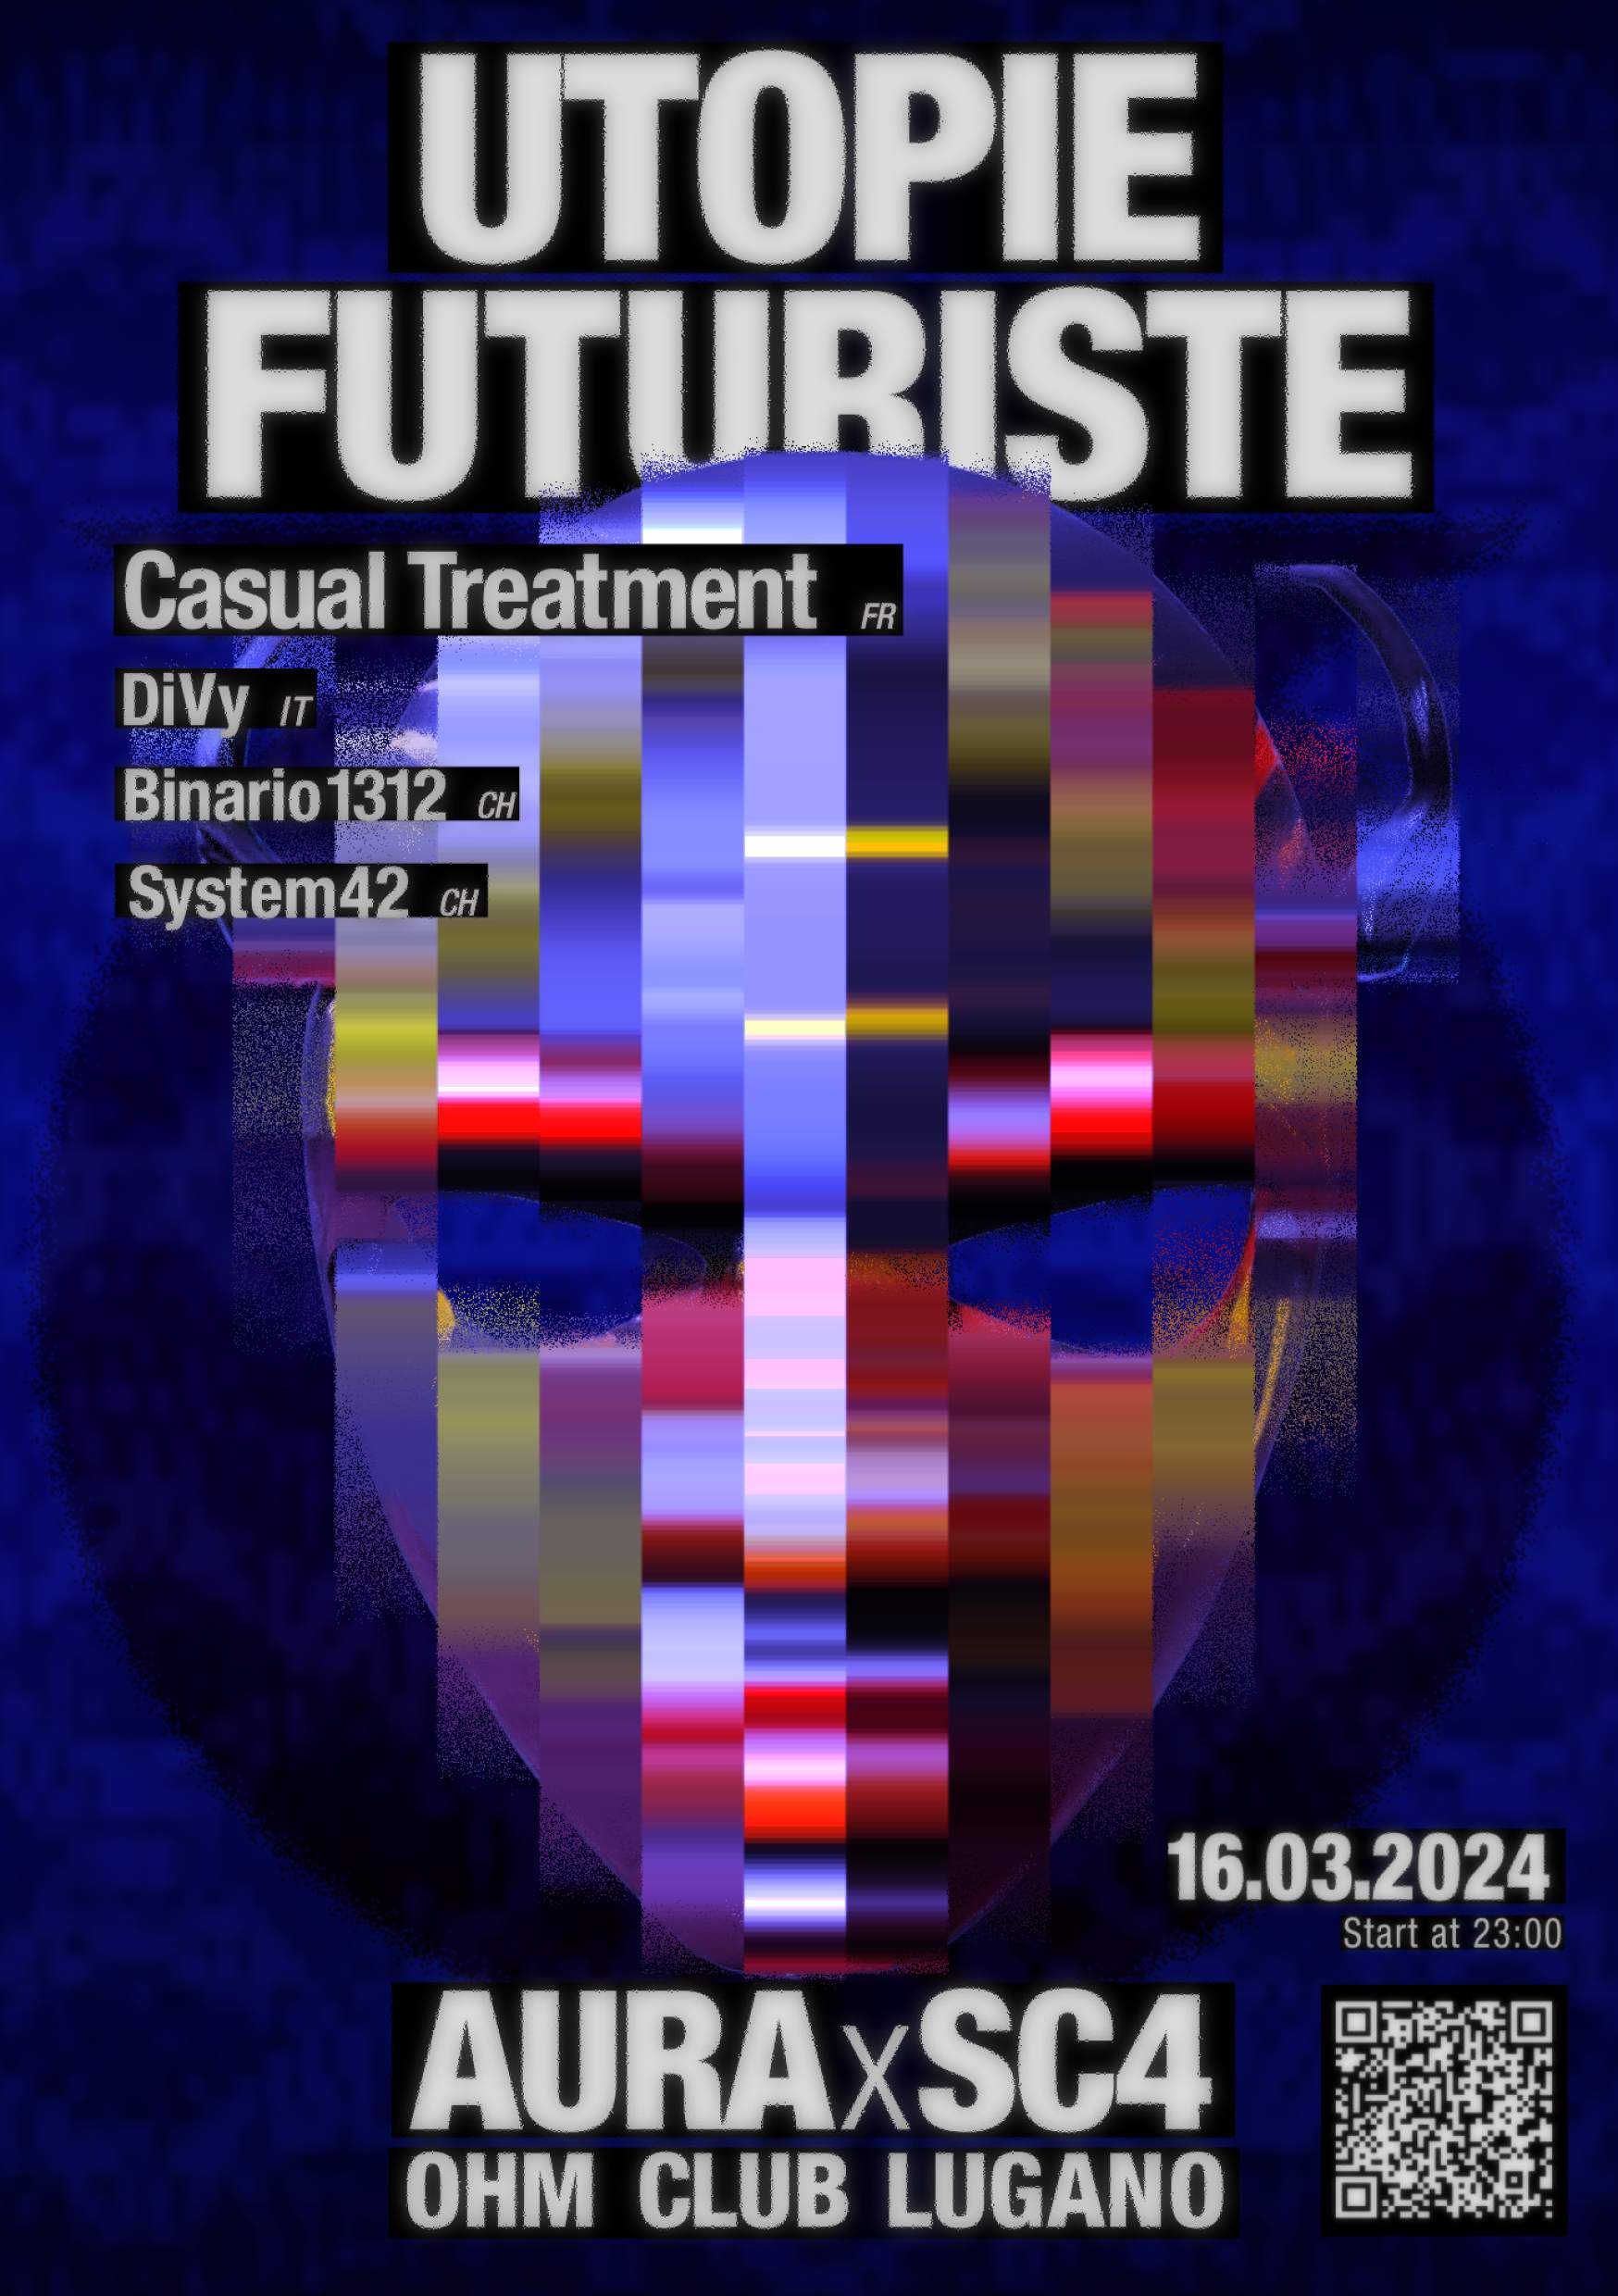 Utopie Futuriste - Página frontal